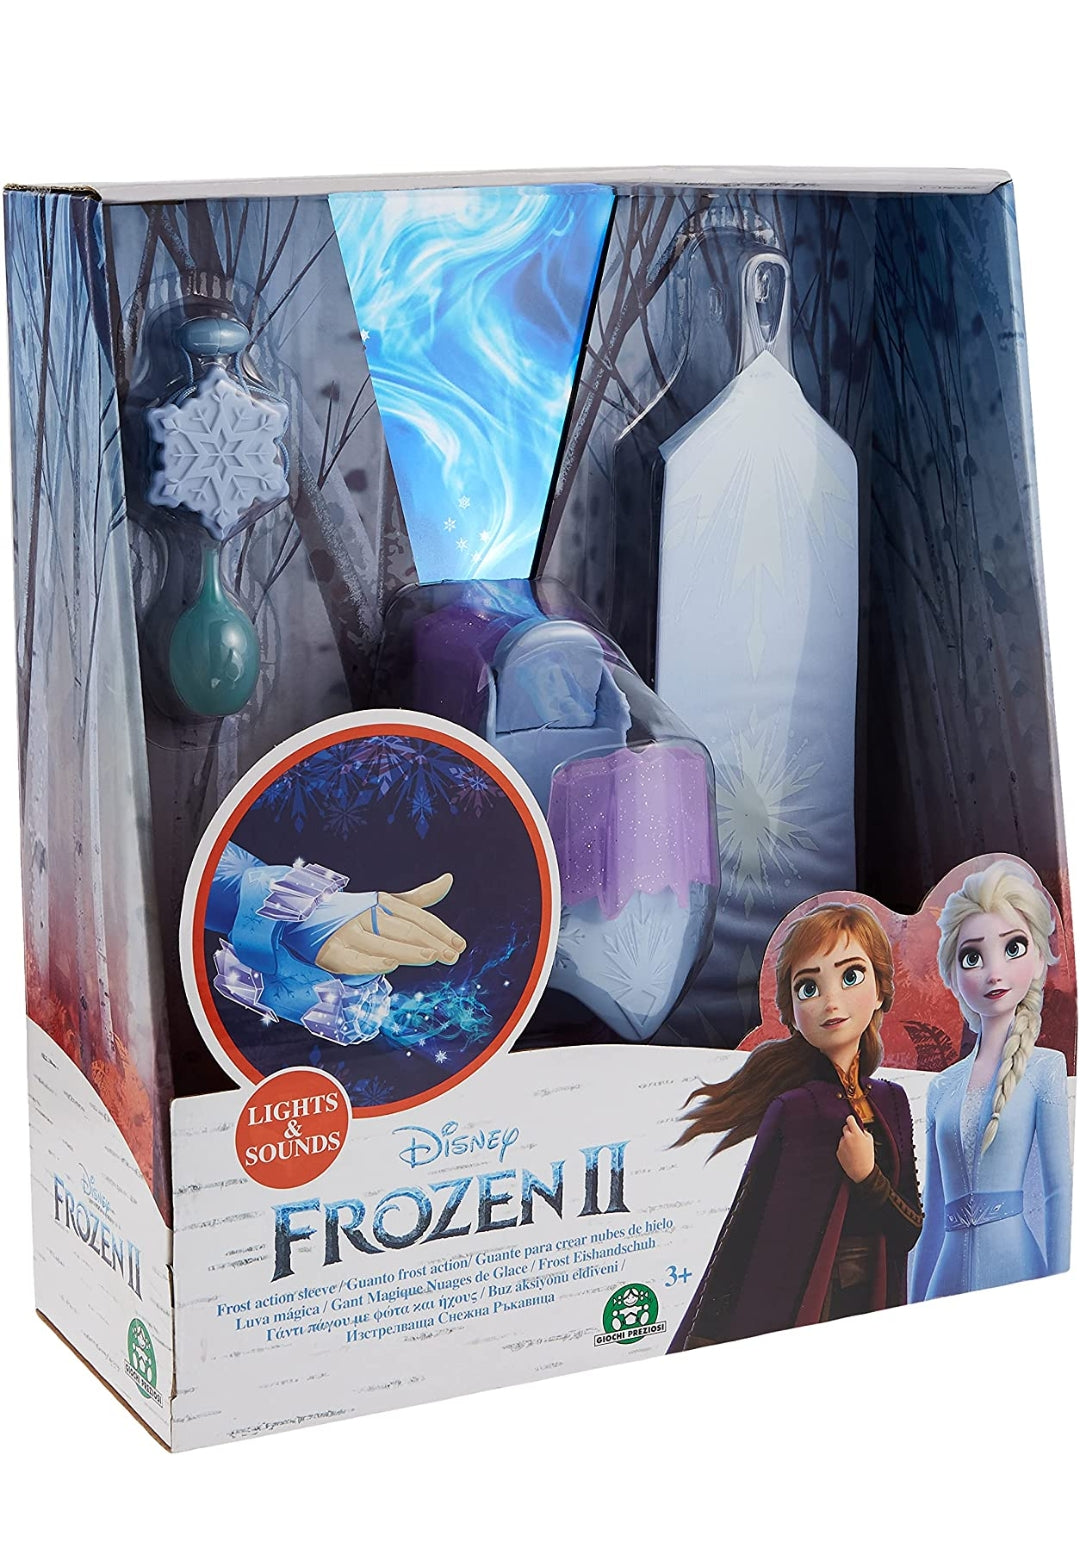 Frozen II Frost Action Sleeve